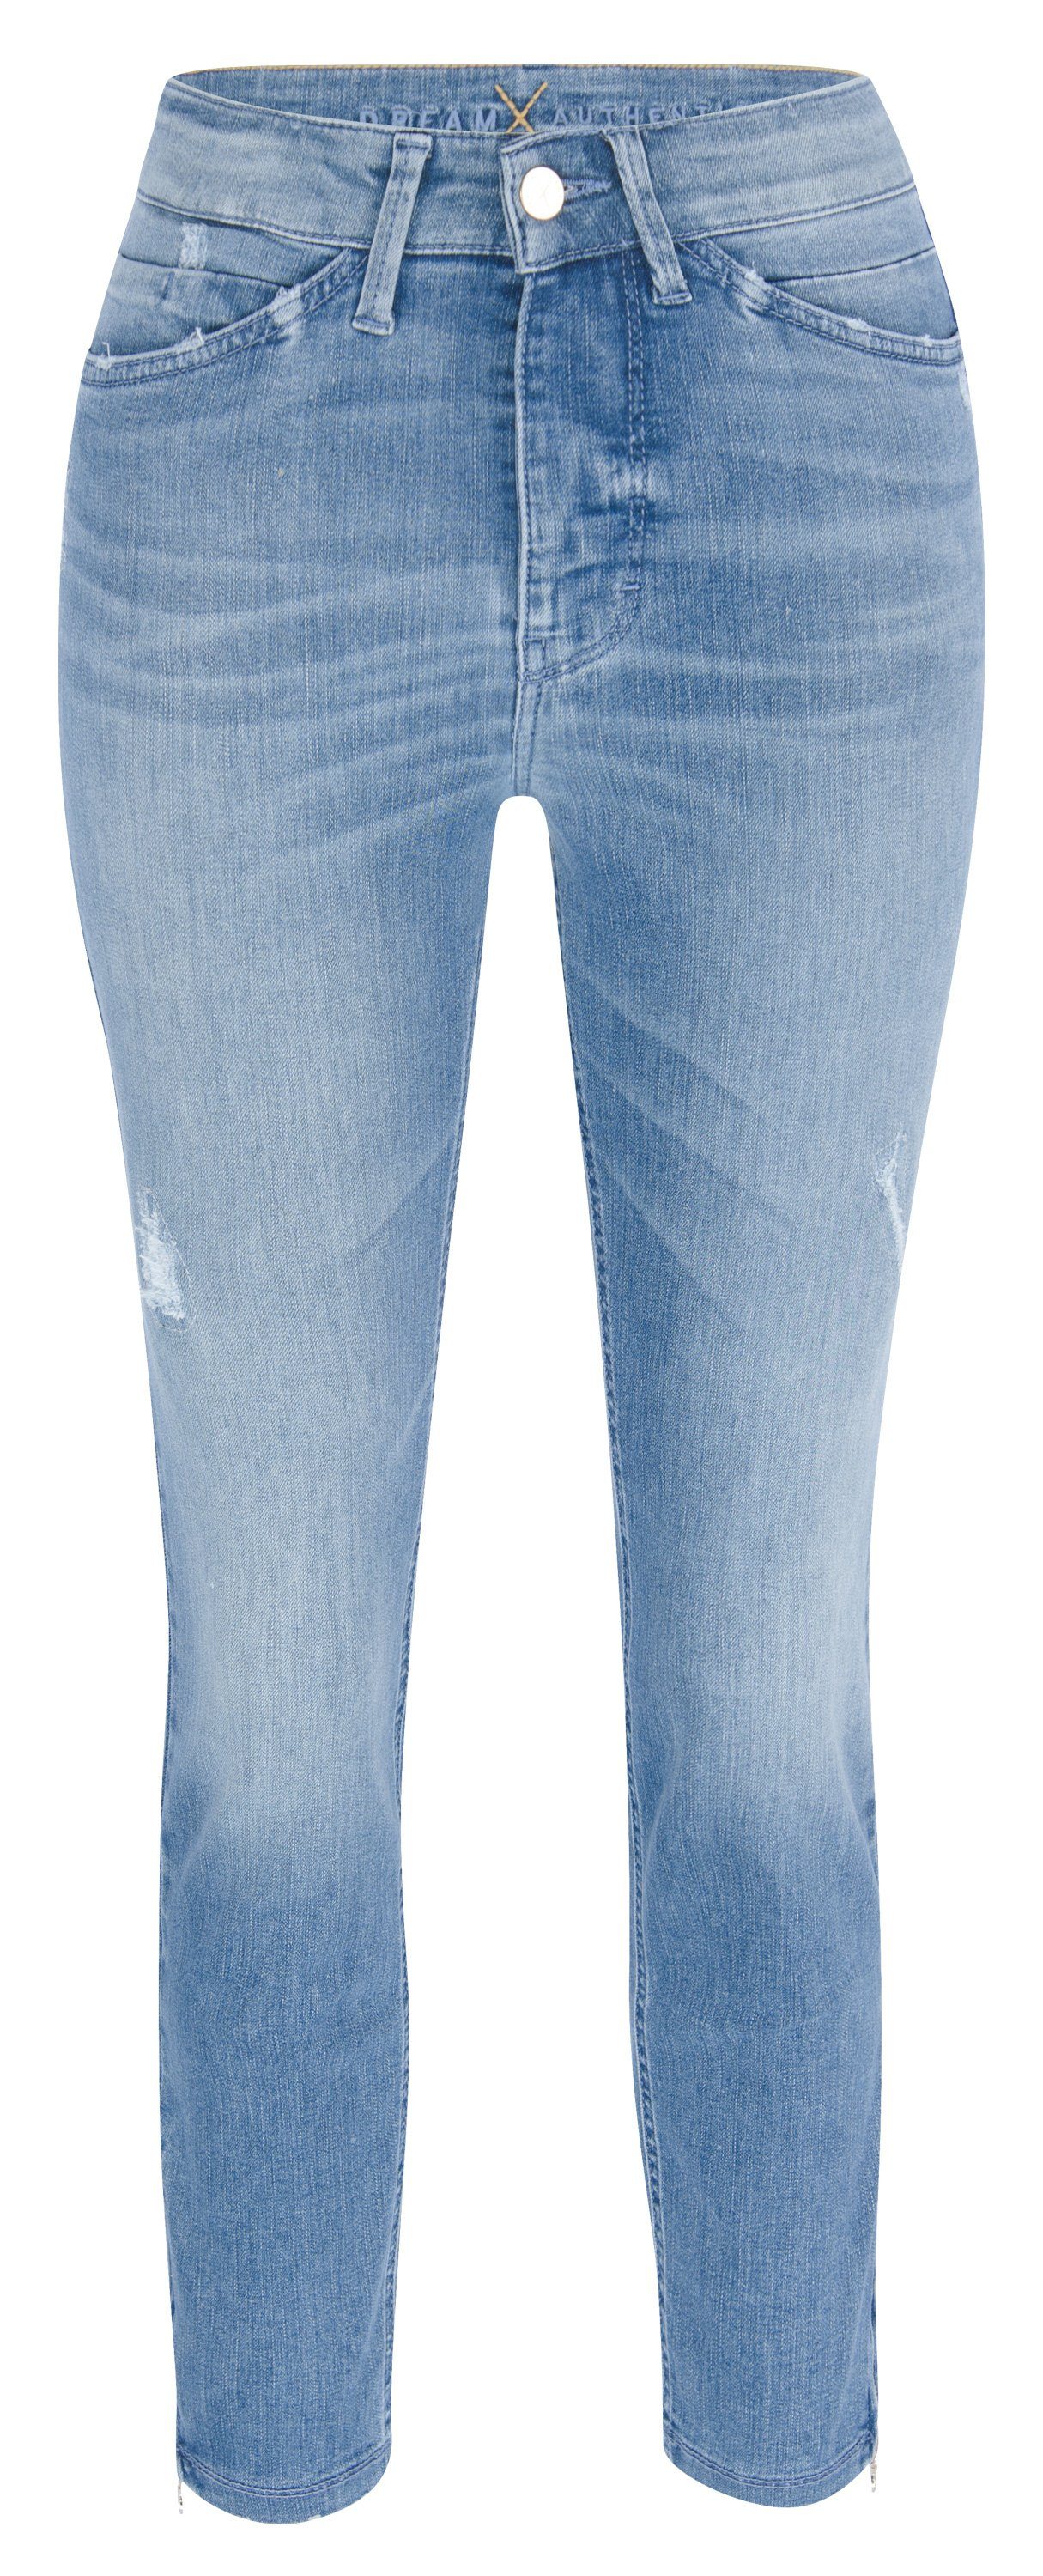 MAC Stretch-Jeans MAC DREAM CHIC light blue authentic wash 5452-90-0356 D460 D460 light blue auth